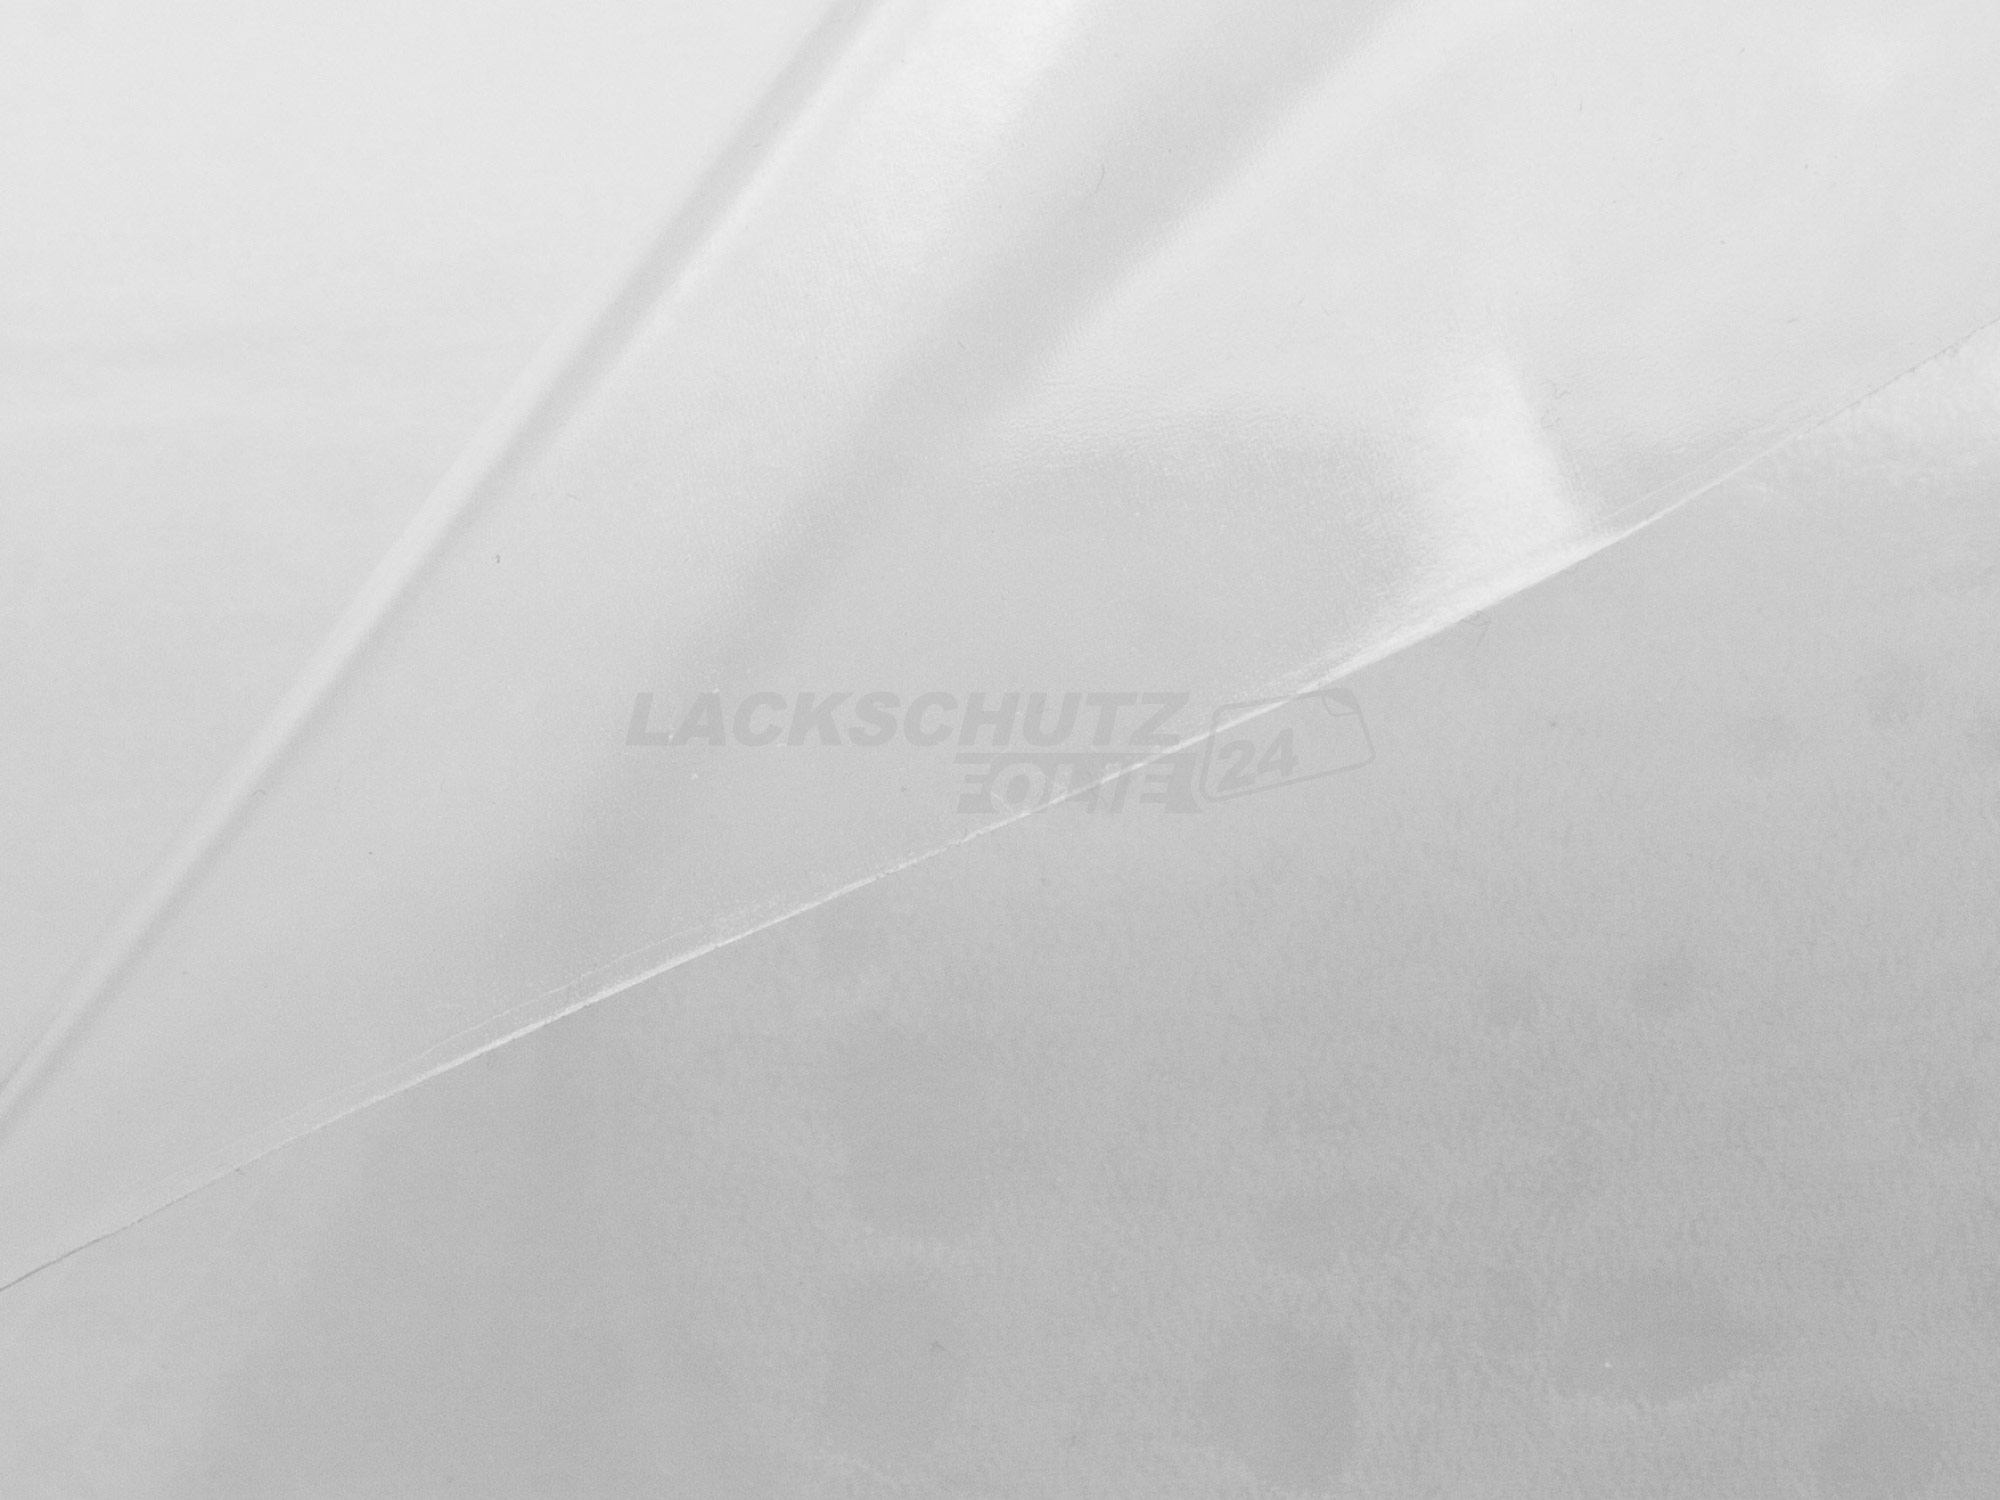 Ladekantenschutzfolie - Transparent Glatt Hochglänzend 150 µm stark für BMW 7er Typ G11, BJ 10/2015-12/2018